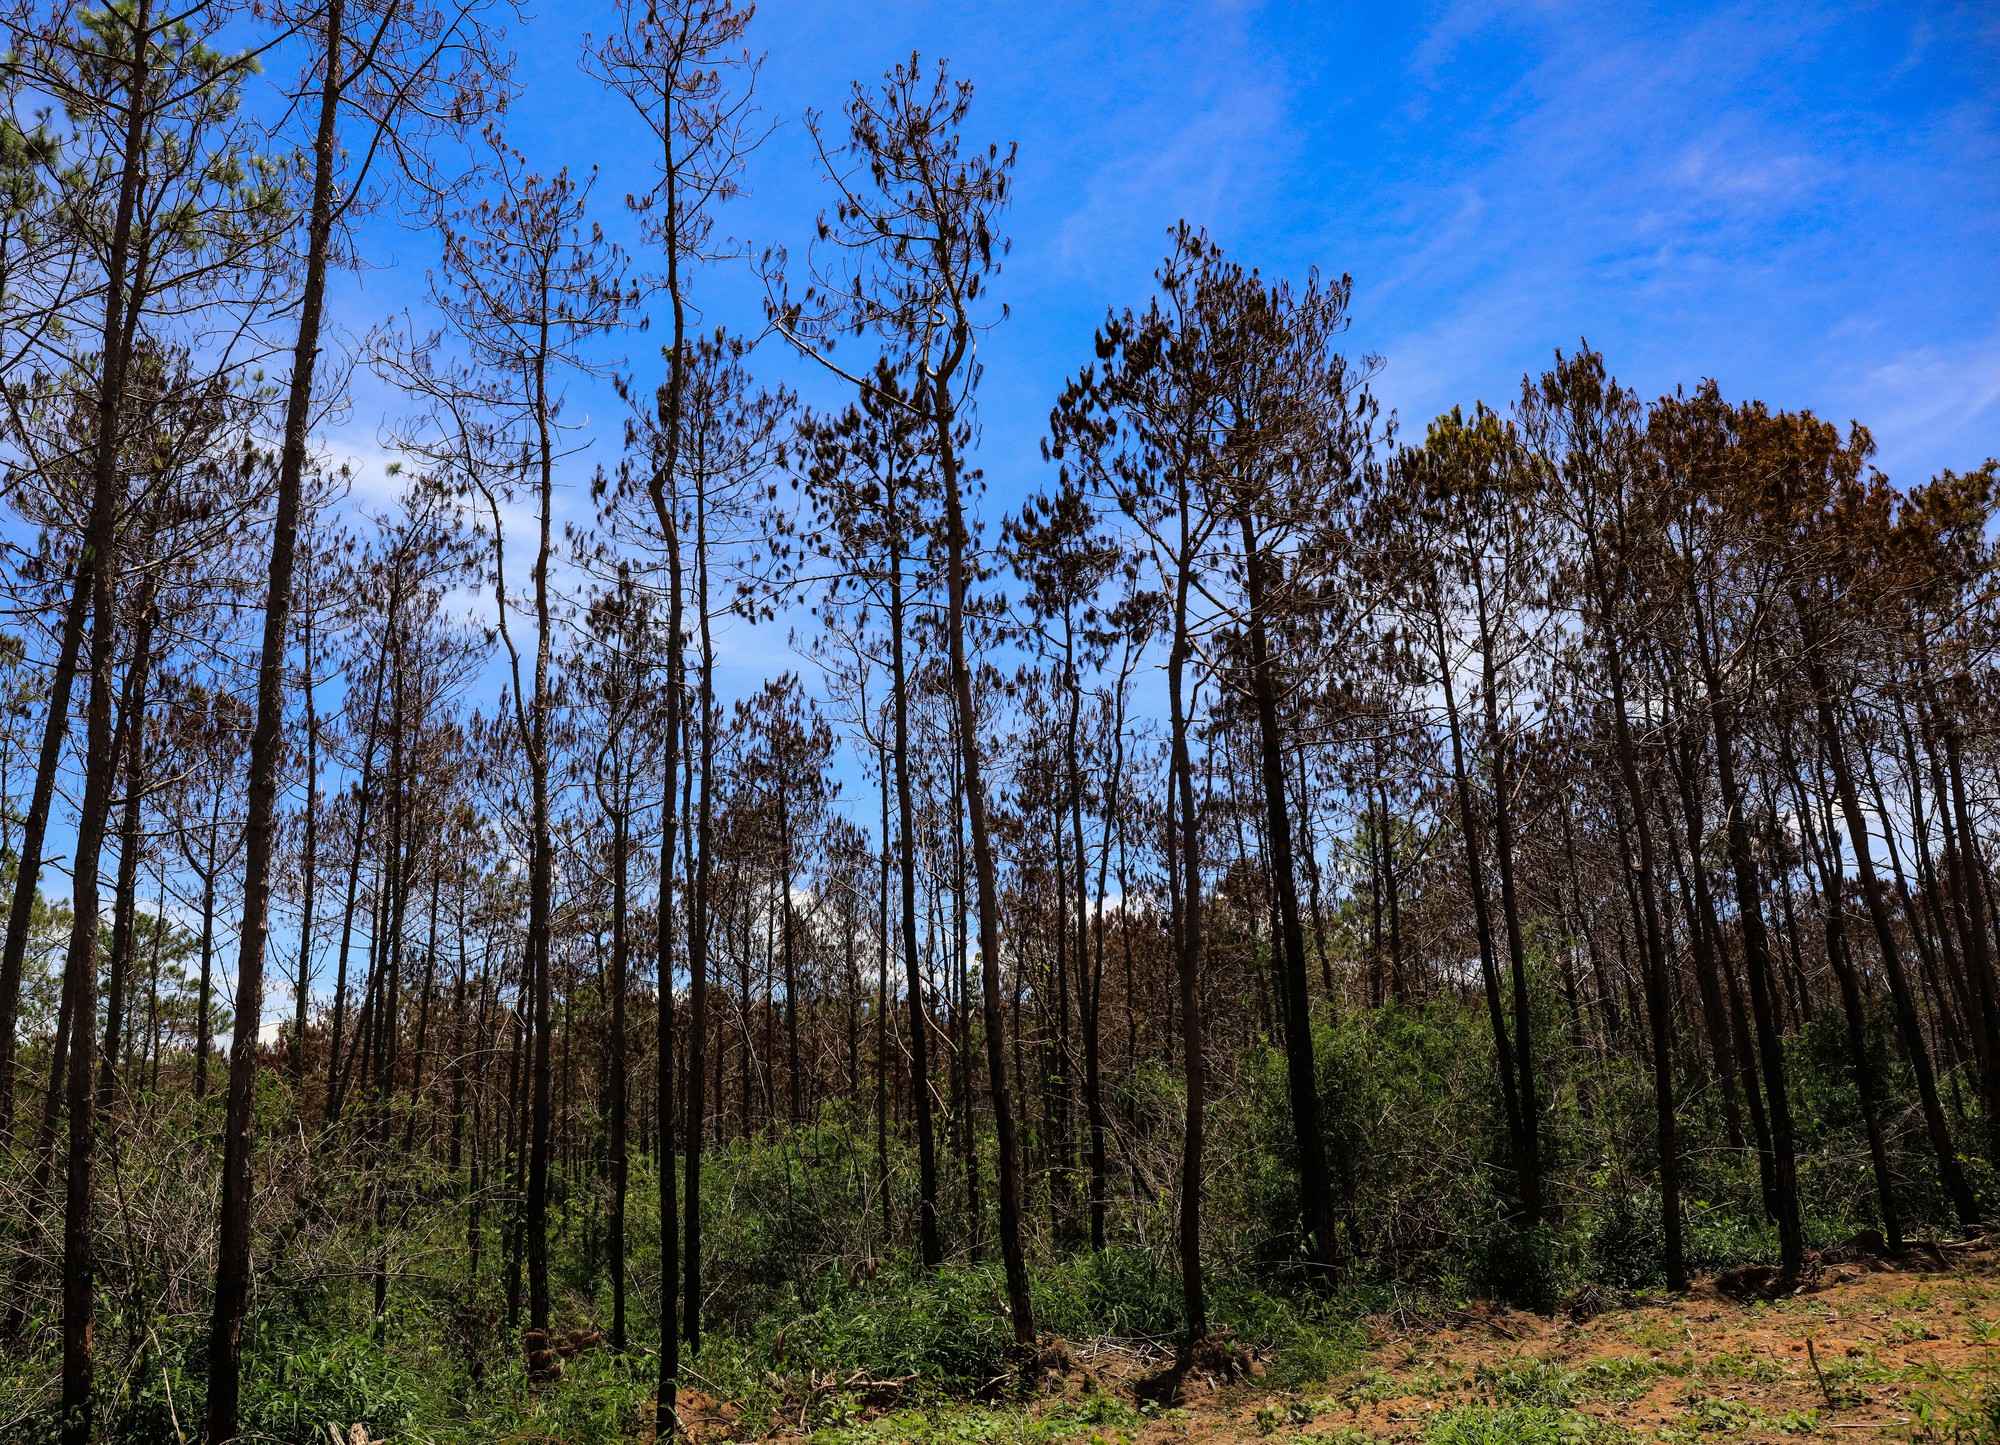 Hạ độc 3.500 cây thông: mỗi cây bị diệt chỉ trong một phút - Ảnh 5.